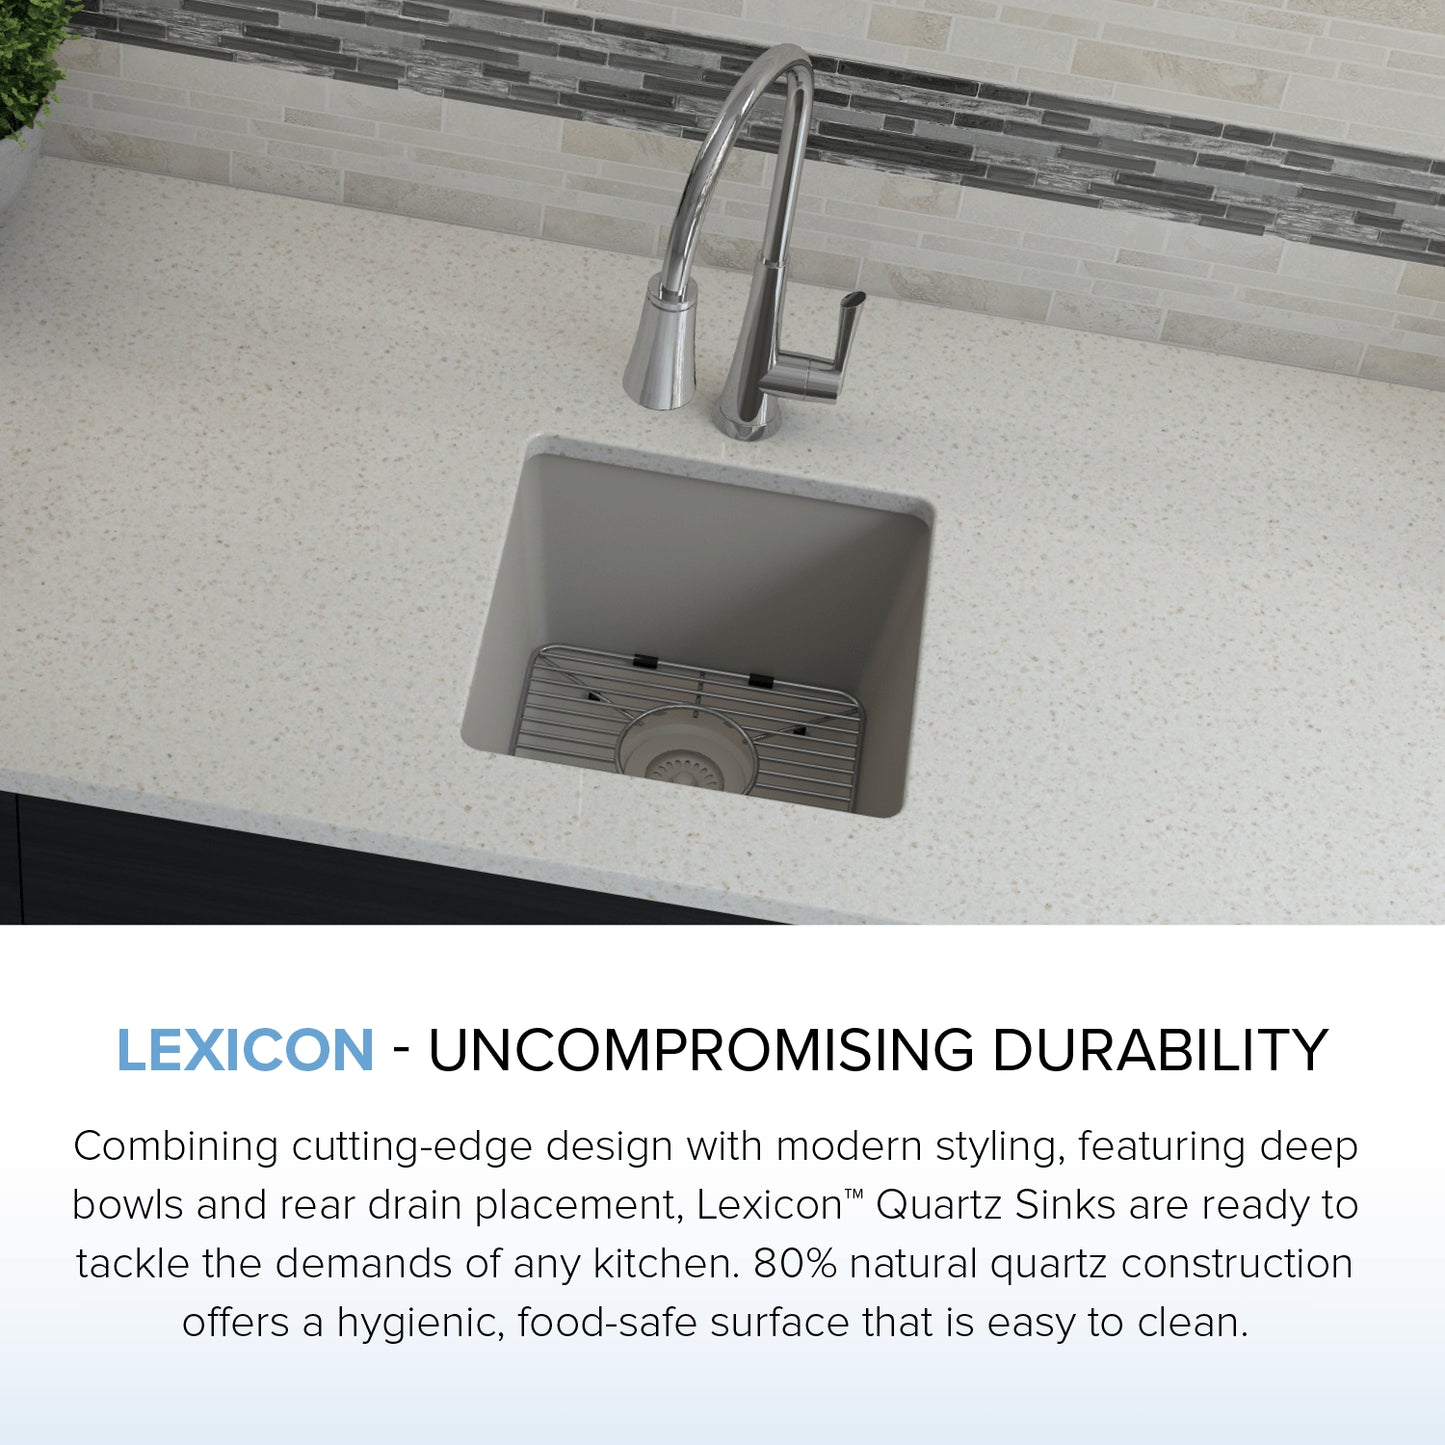 Lexicon Platinum 15" Quartz Composite Sink LP-1515